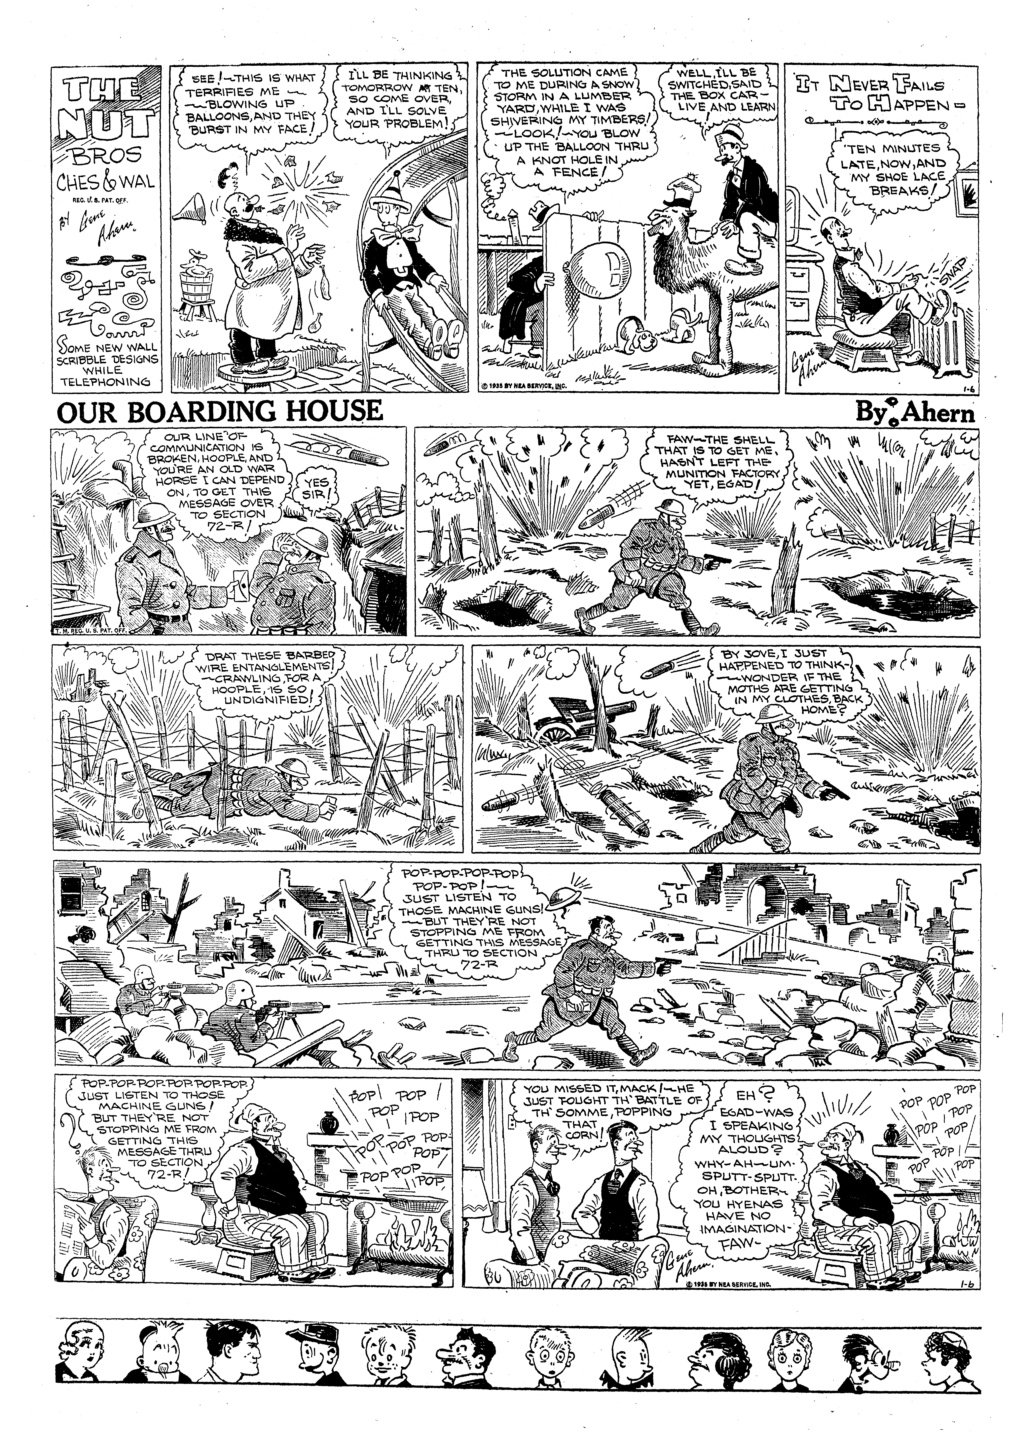 9ème Art, musée de la bande dessinée par Morris et Vankeer - Page 23 35010610